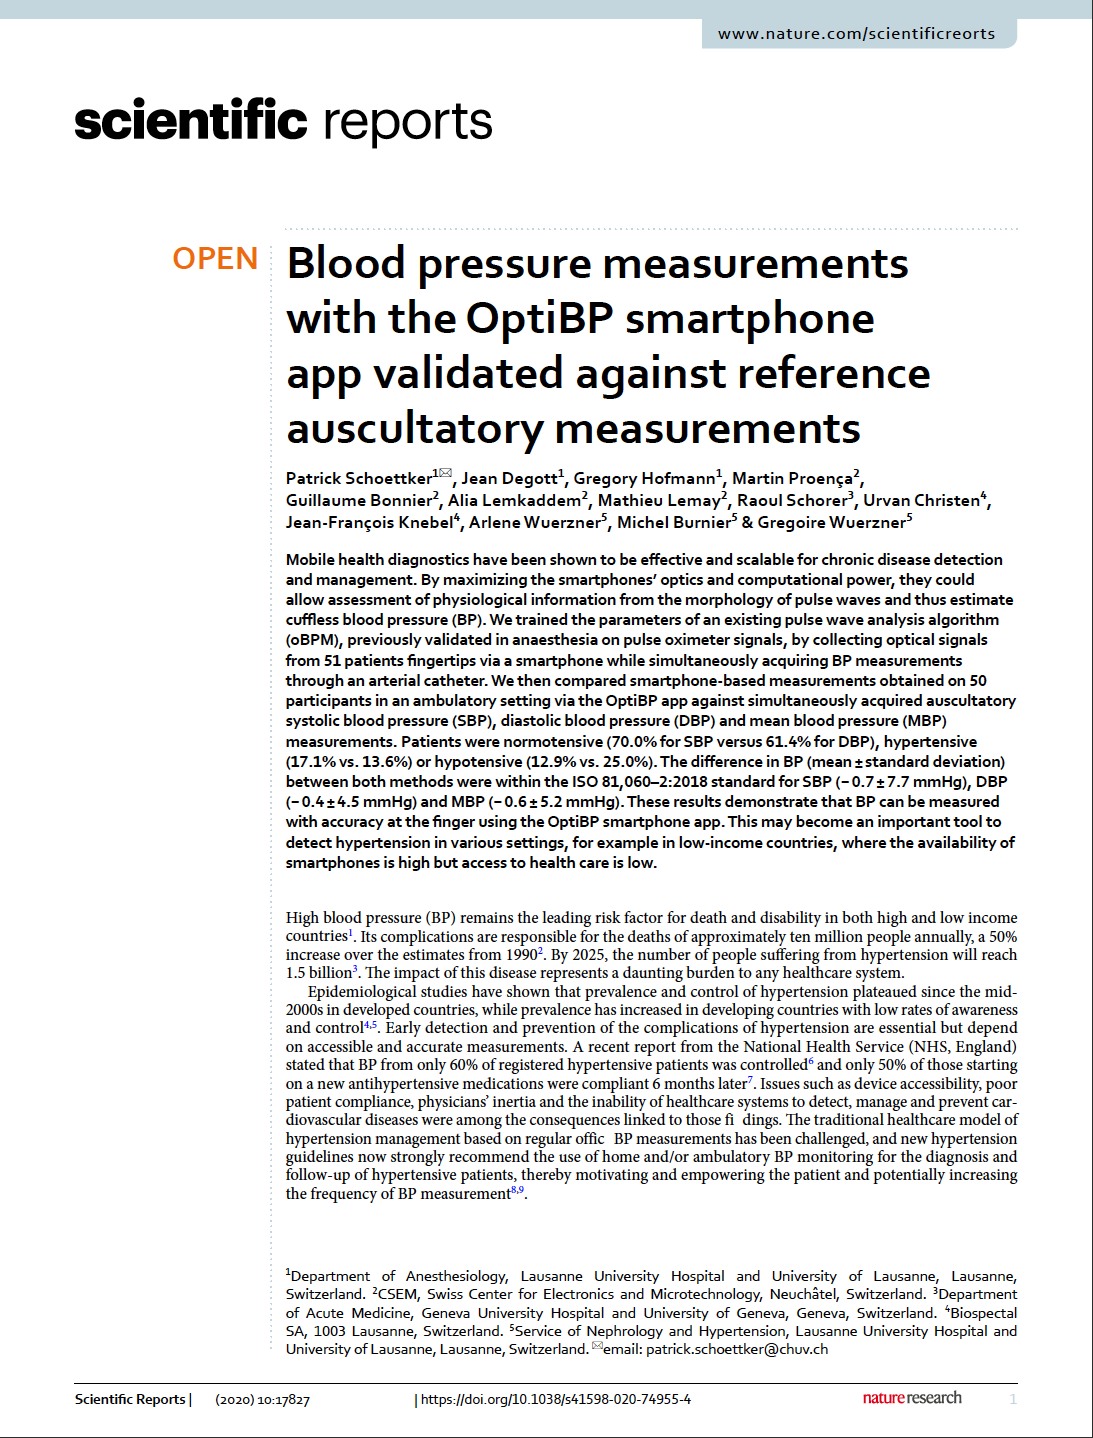 Biospectal Blood Pressure Study Publication in Scientific Reports in Nature.